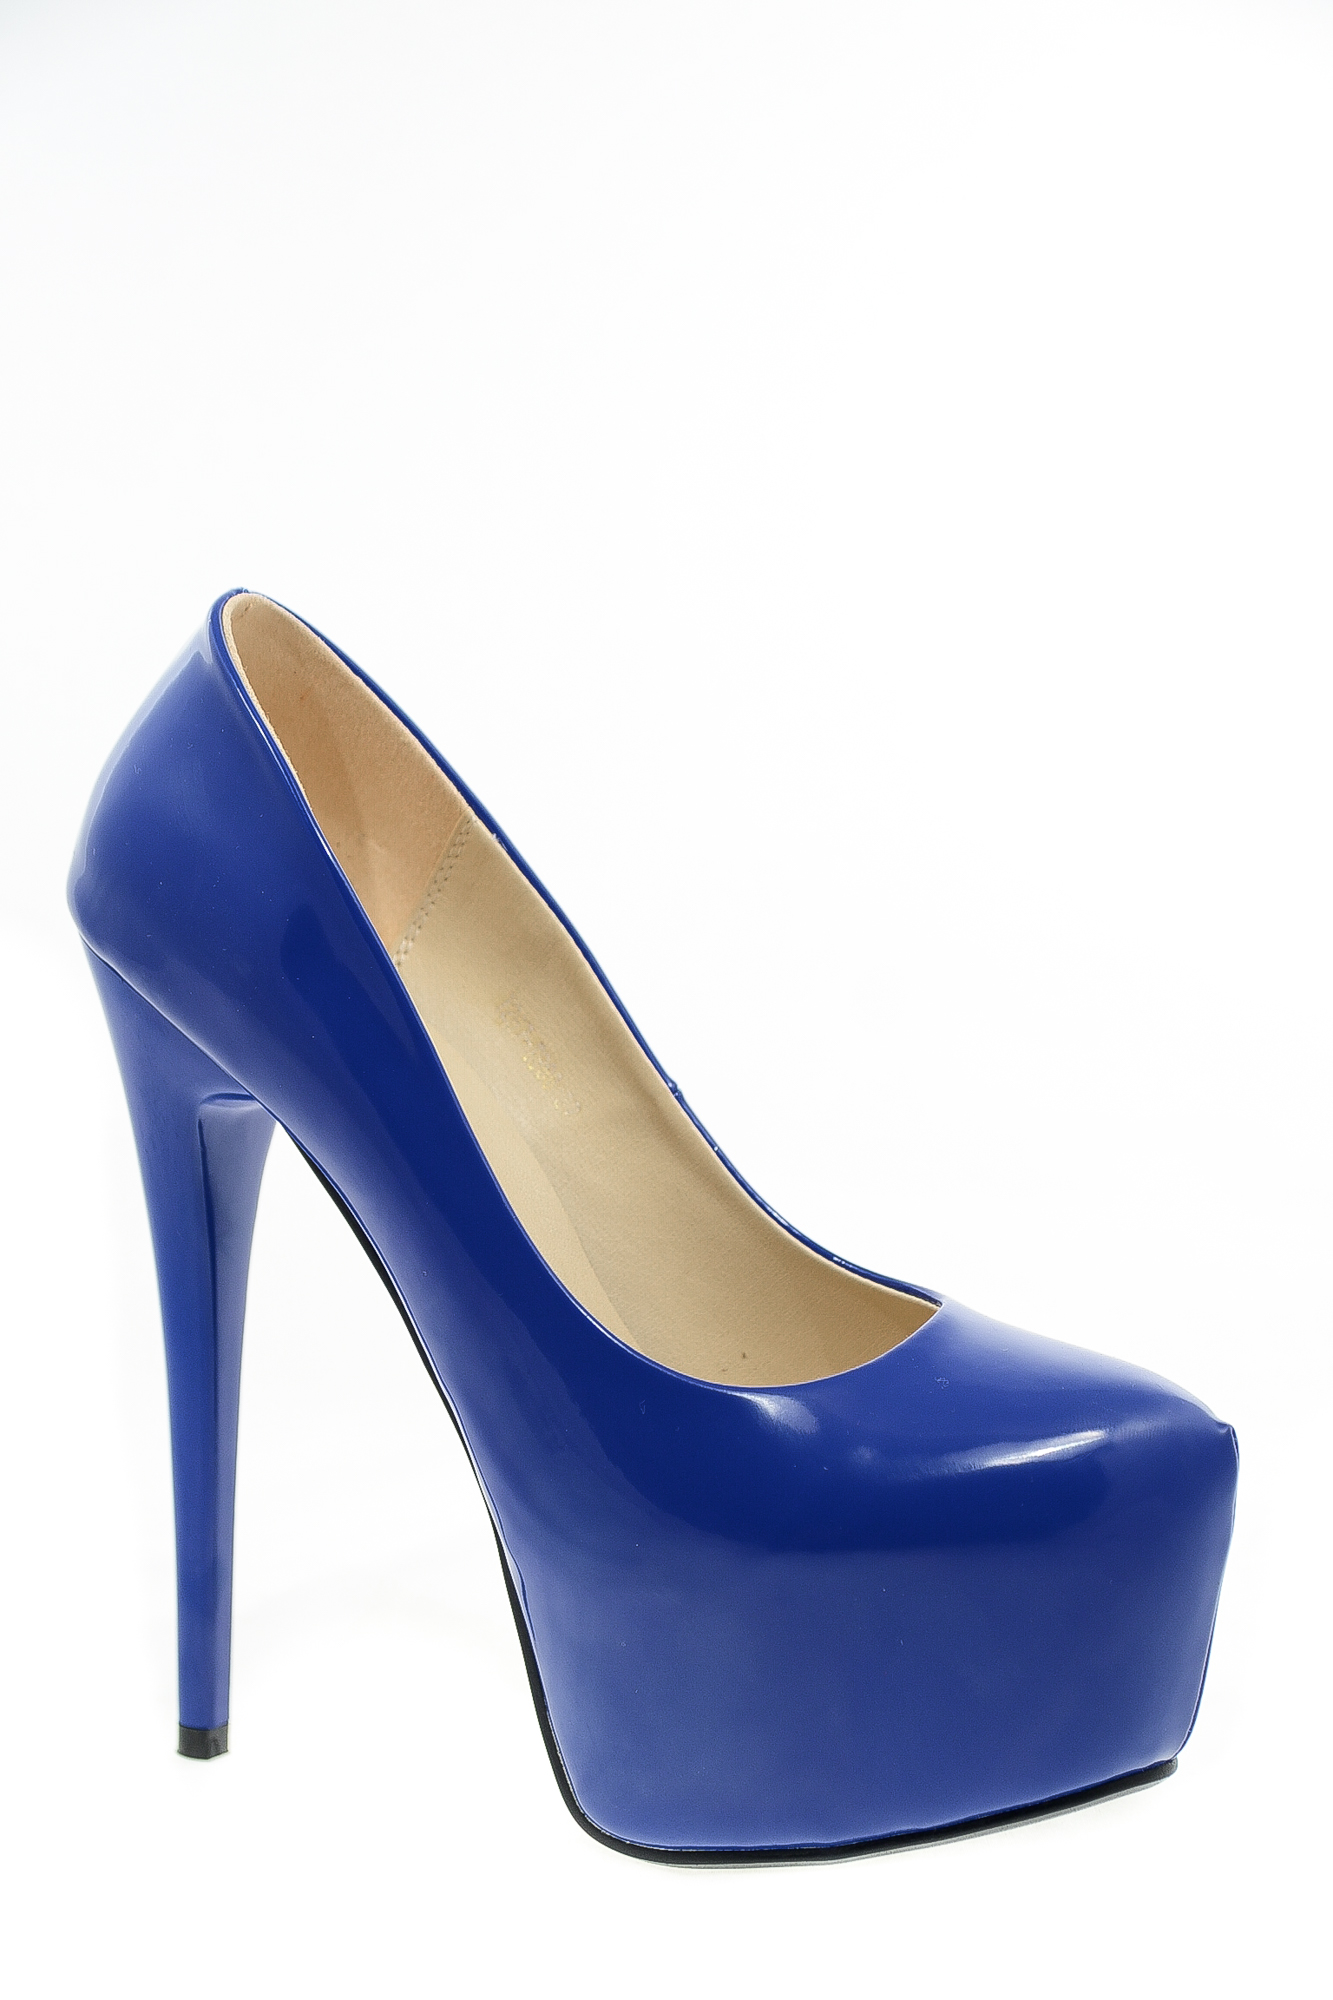 Туфли искусственный лак Biyout CH Biyout T267-T888 blue цвет синий.